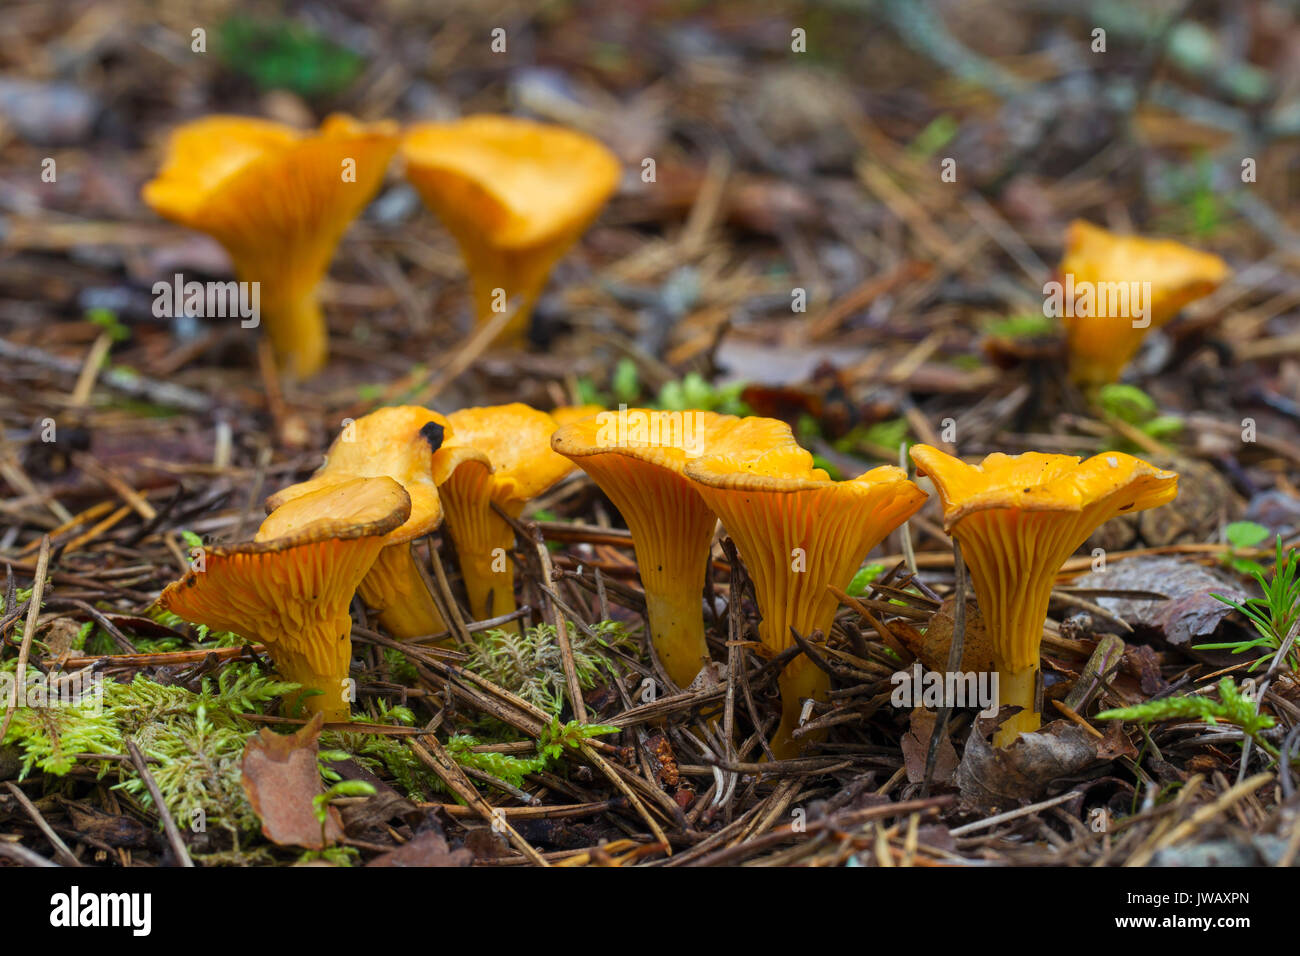 Pfifferlinge/girolle (Cantharellus Cibarius) essbare Pilze auf dem Waldboden im Herbst Wald Stockfoto